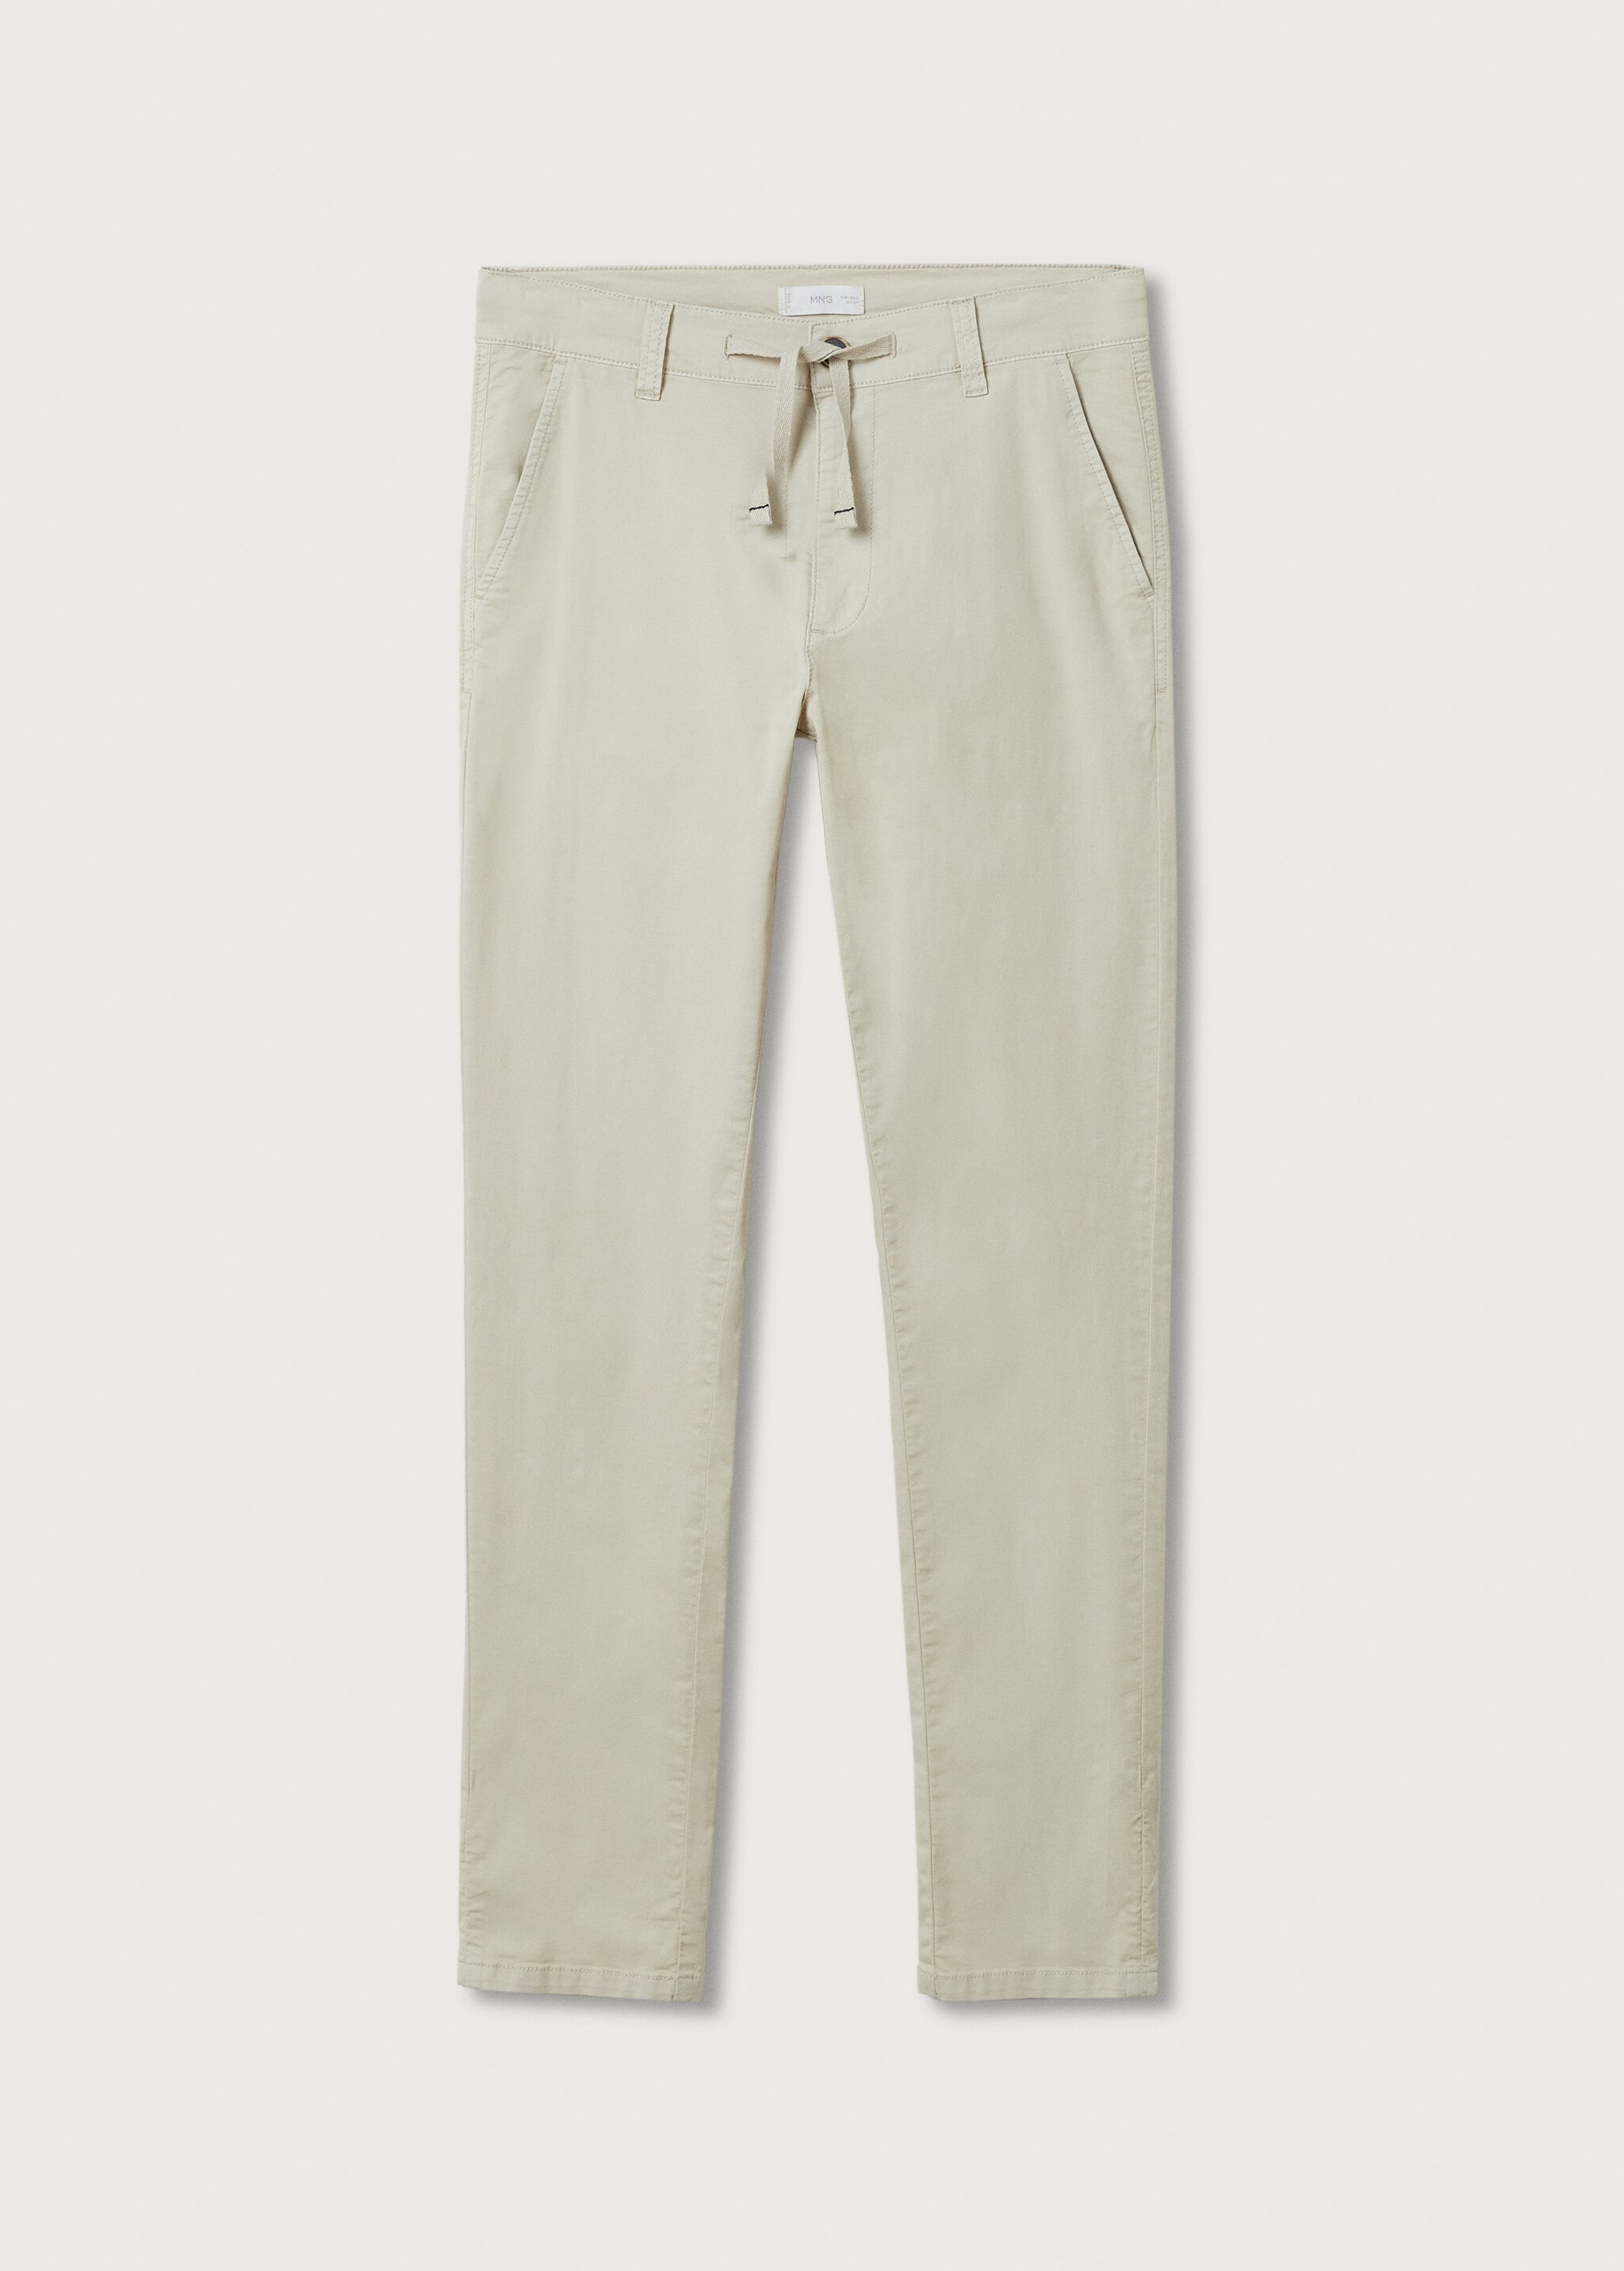 Pantalón slim fit algodón - Artículo sin modelo